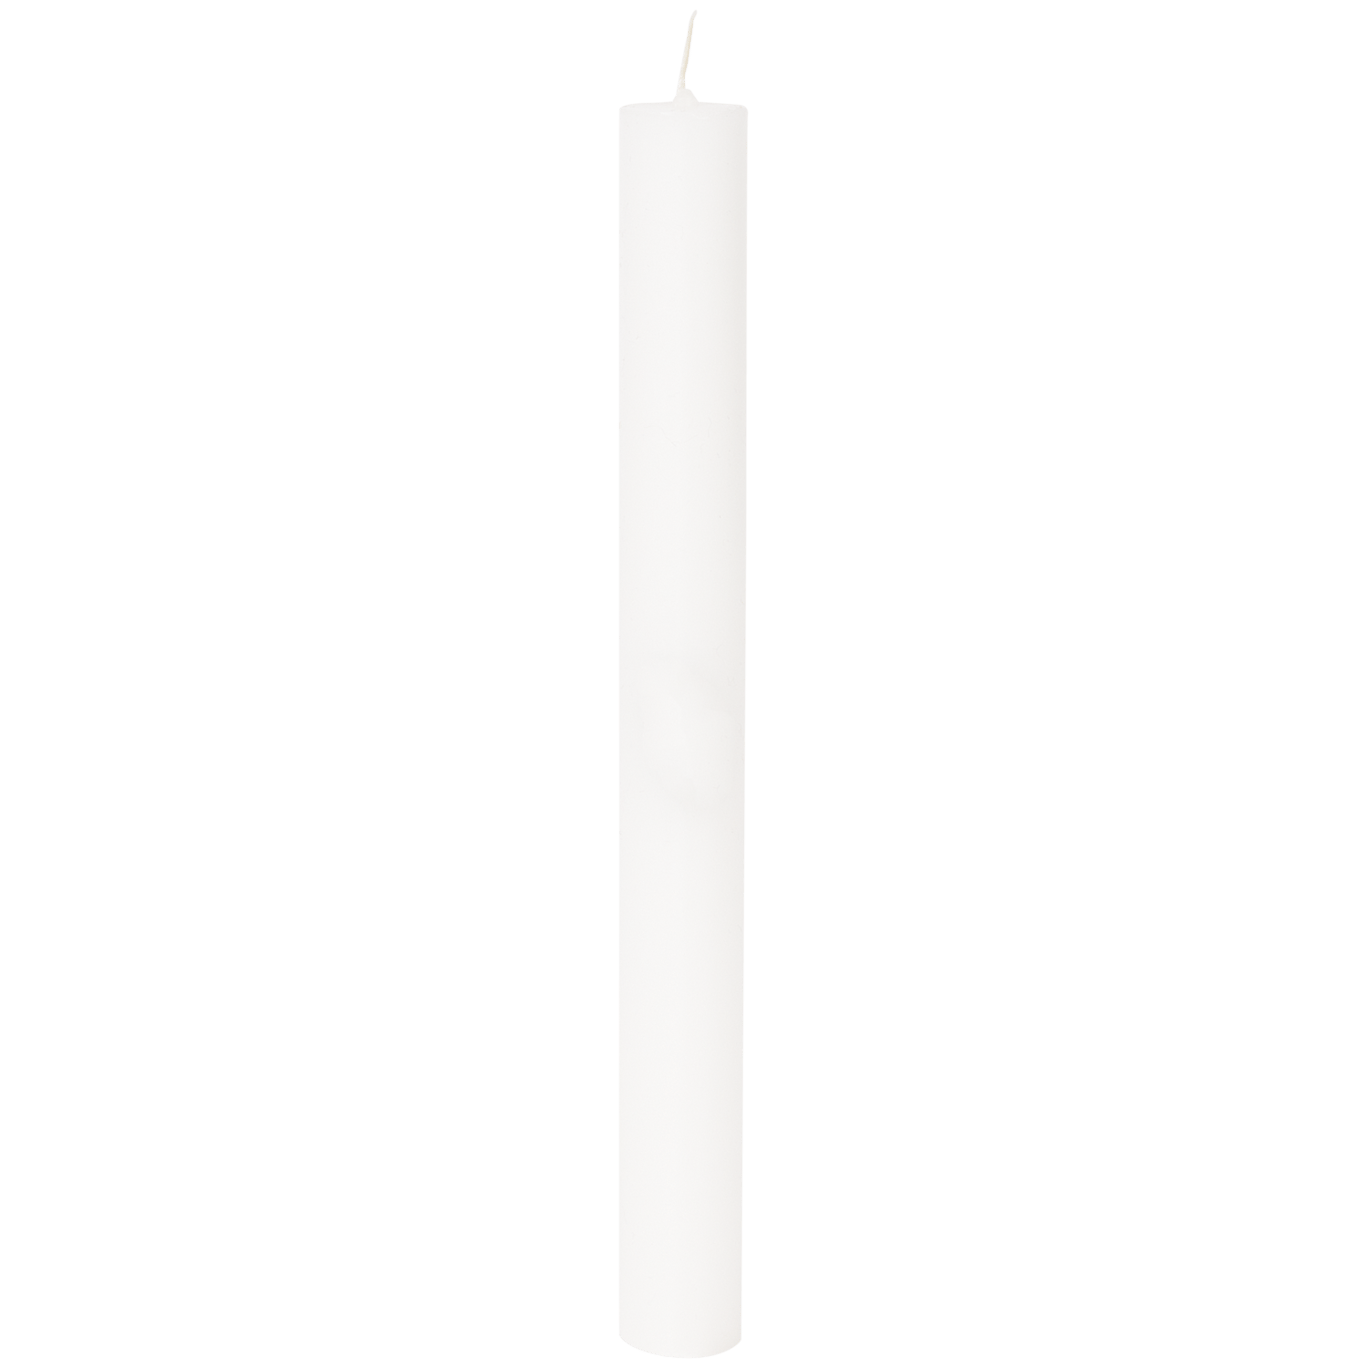 Vela de candelabro Candra blanca